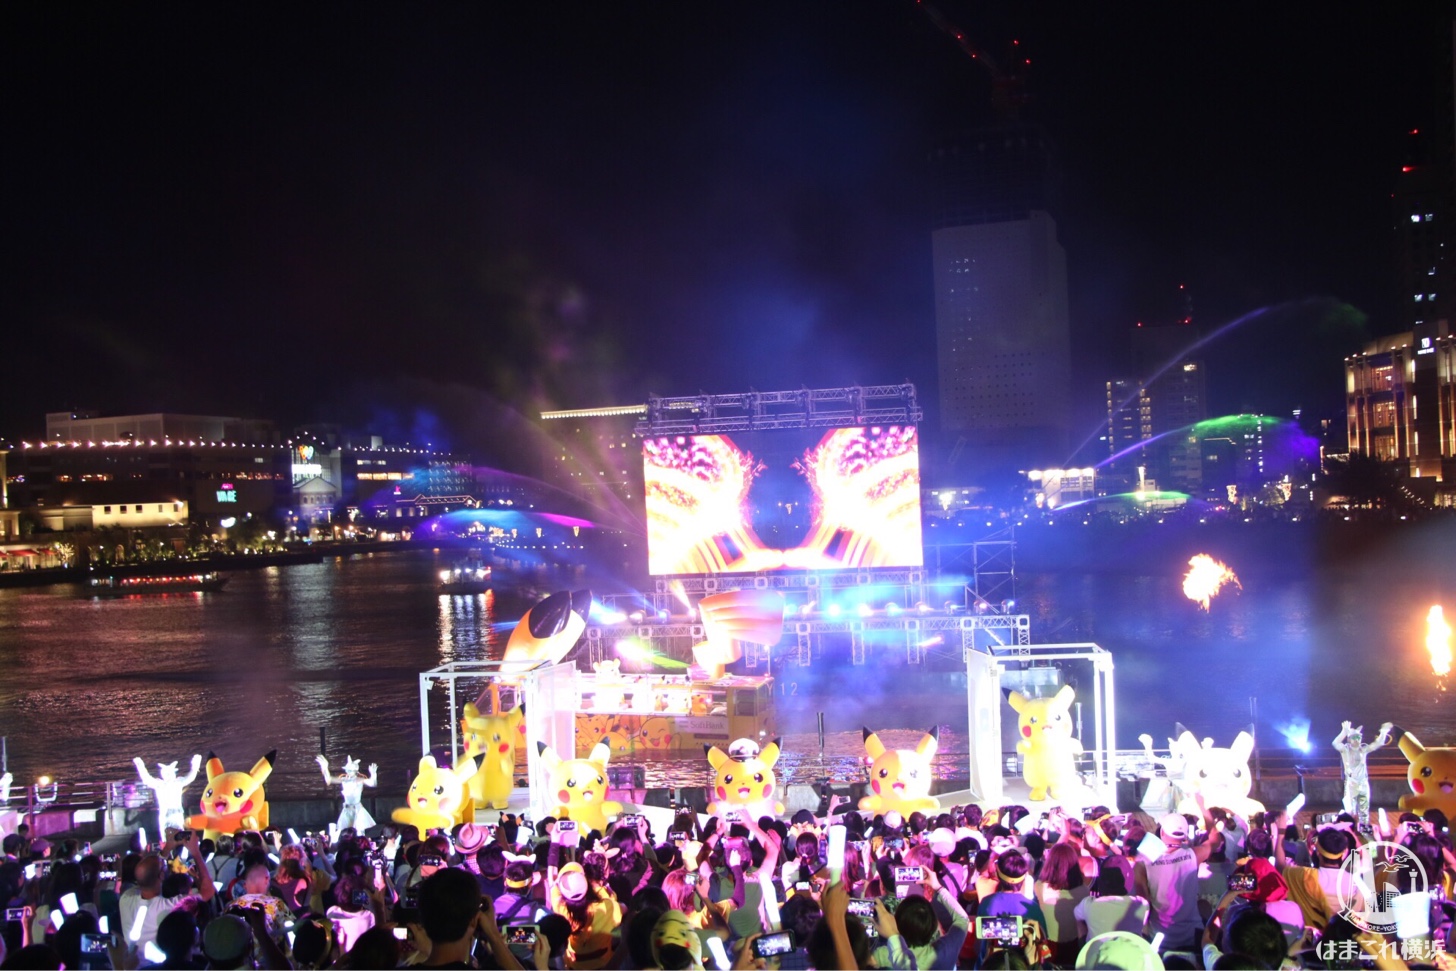 2018年 ピカチュウ夜の水上パレードが光・音楽・夜景を融合したショーの連続で凄すぎ！